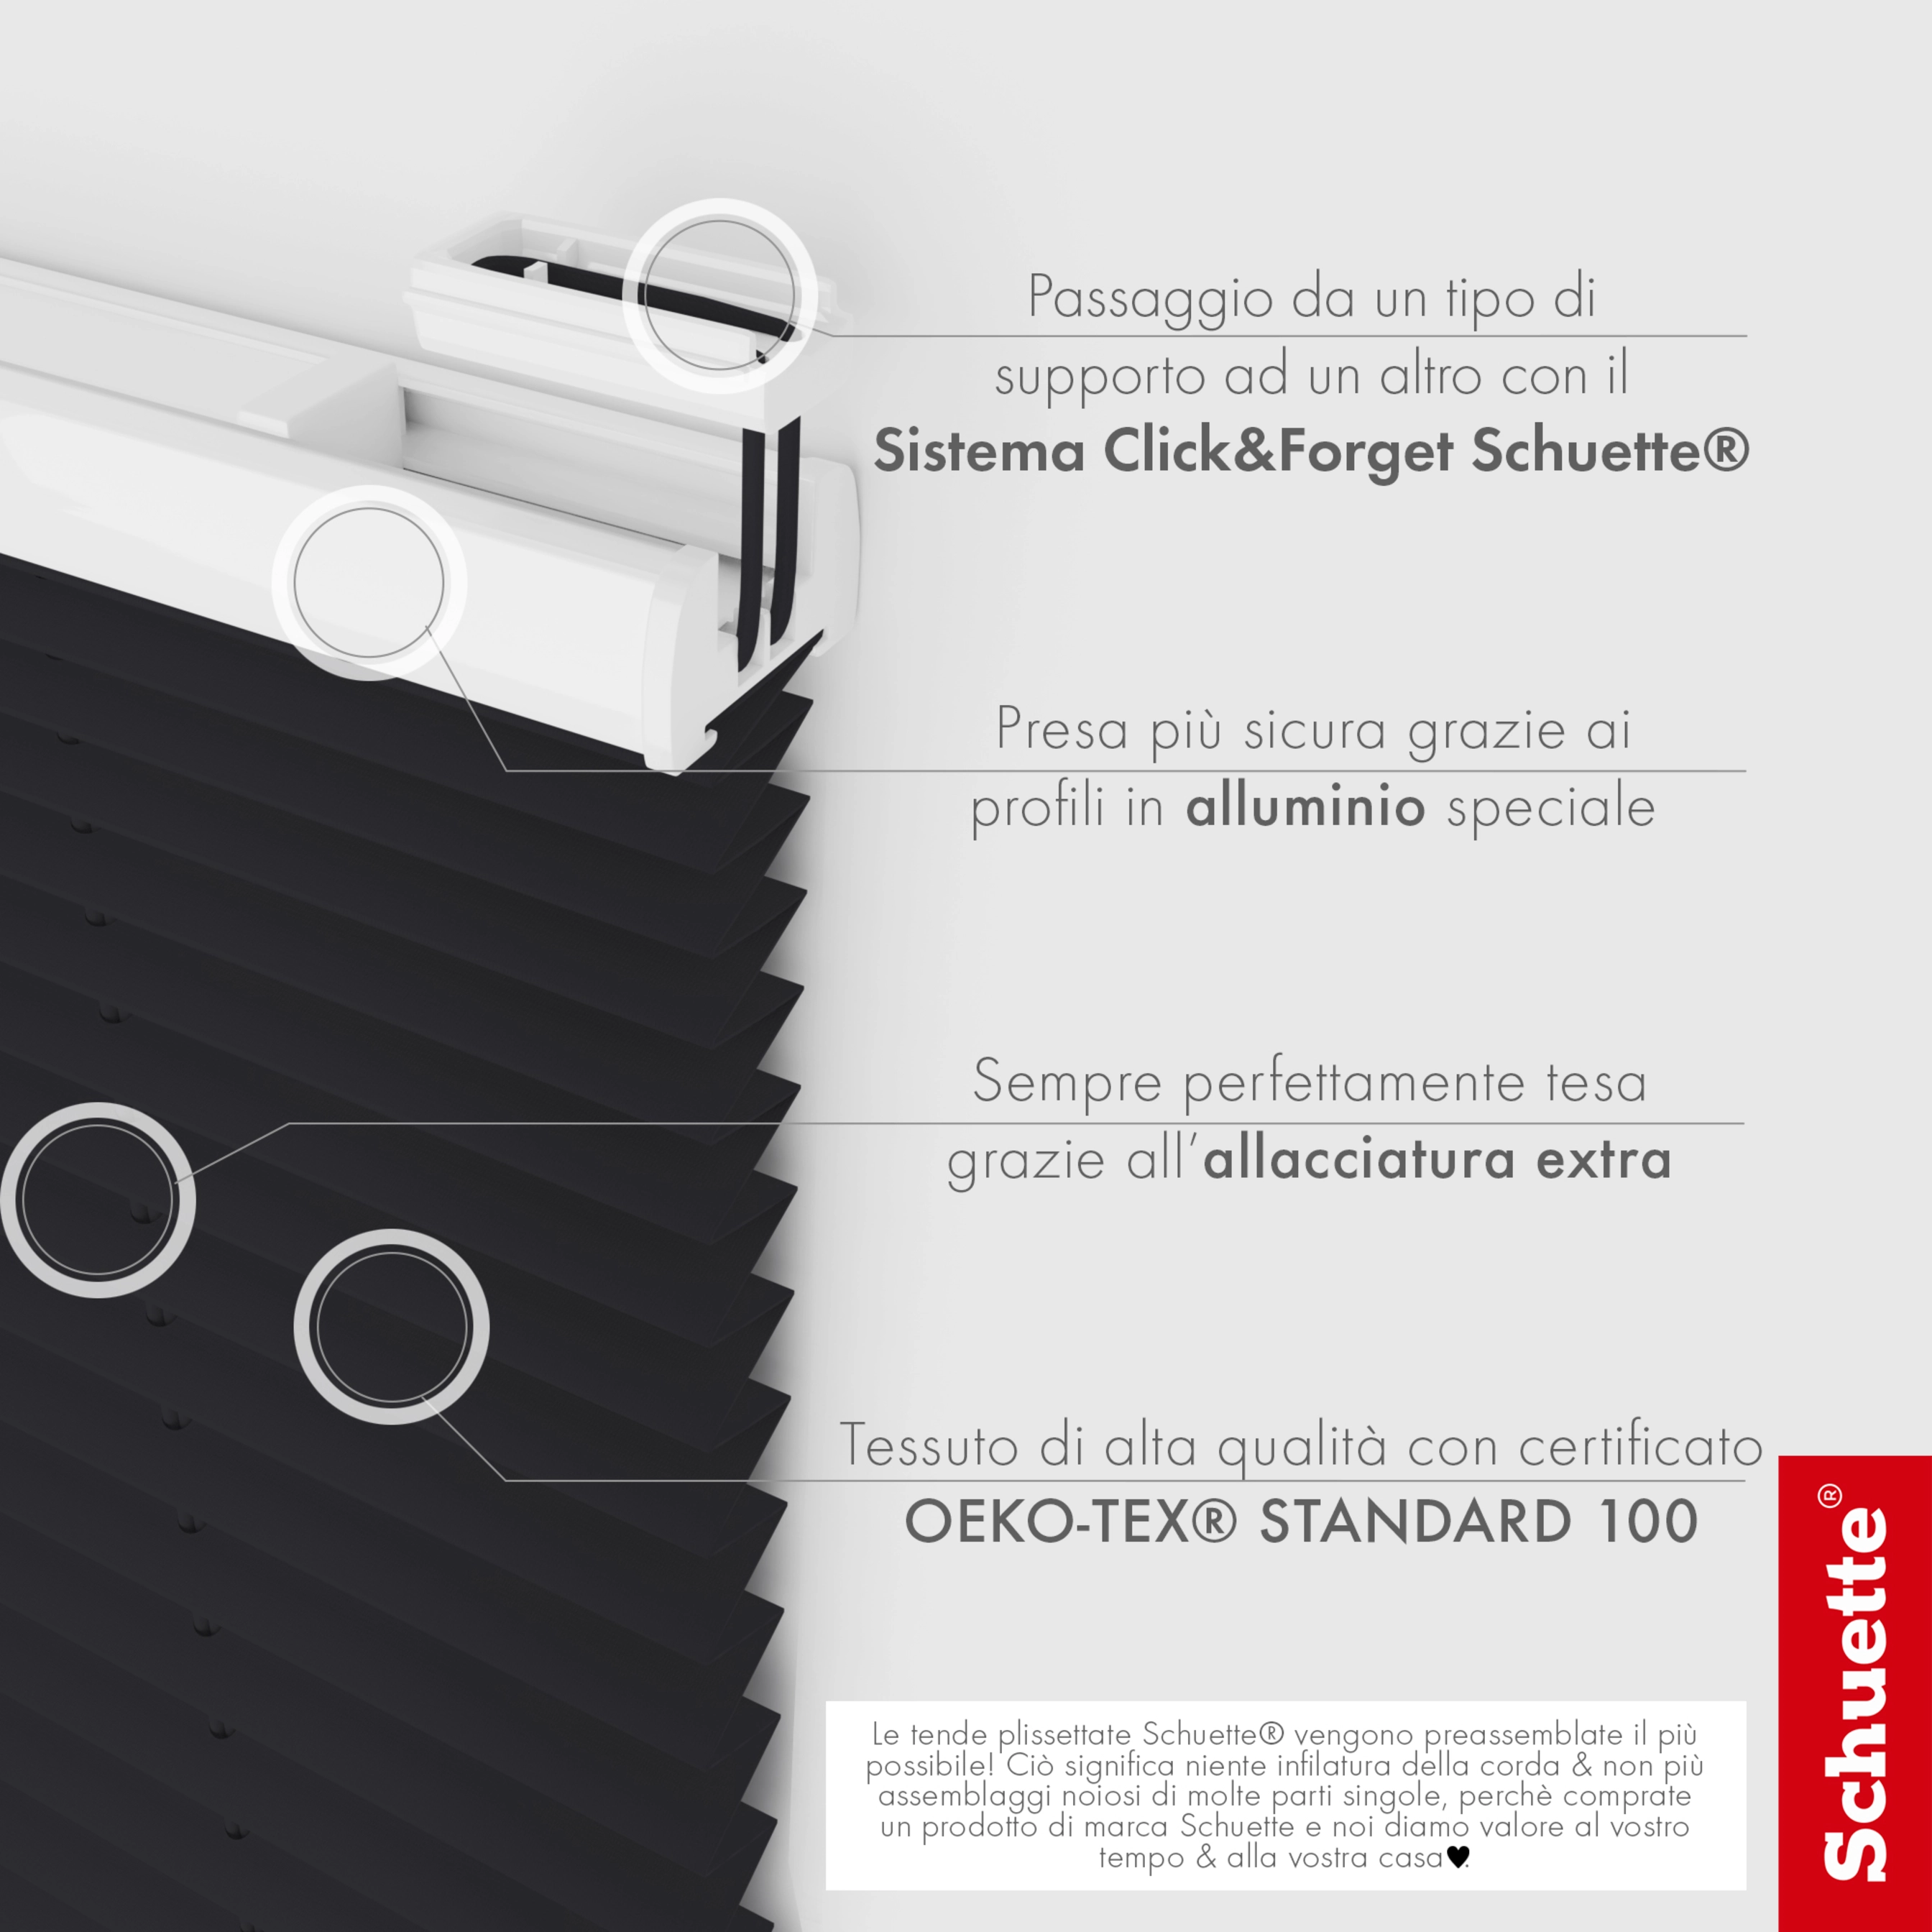 Schuette® Dachfenster Plissee nach Maß • Premium Kollektion: Silesian Coal (Schwarz) • Profilfarbe: Weiß